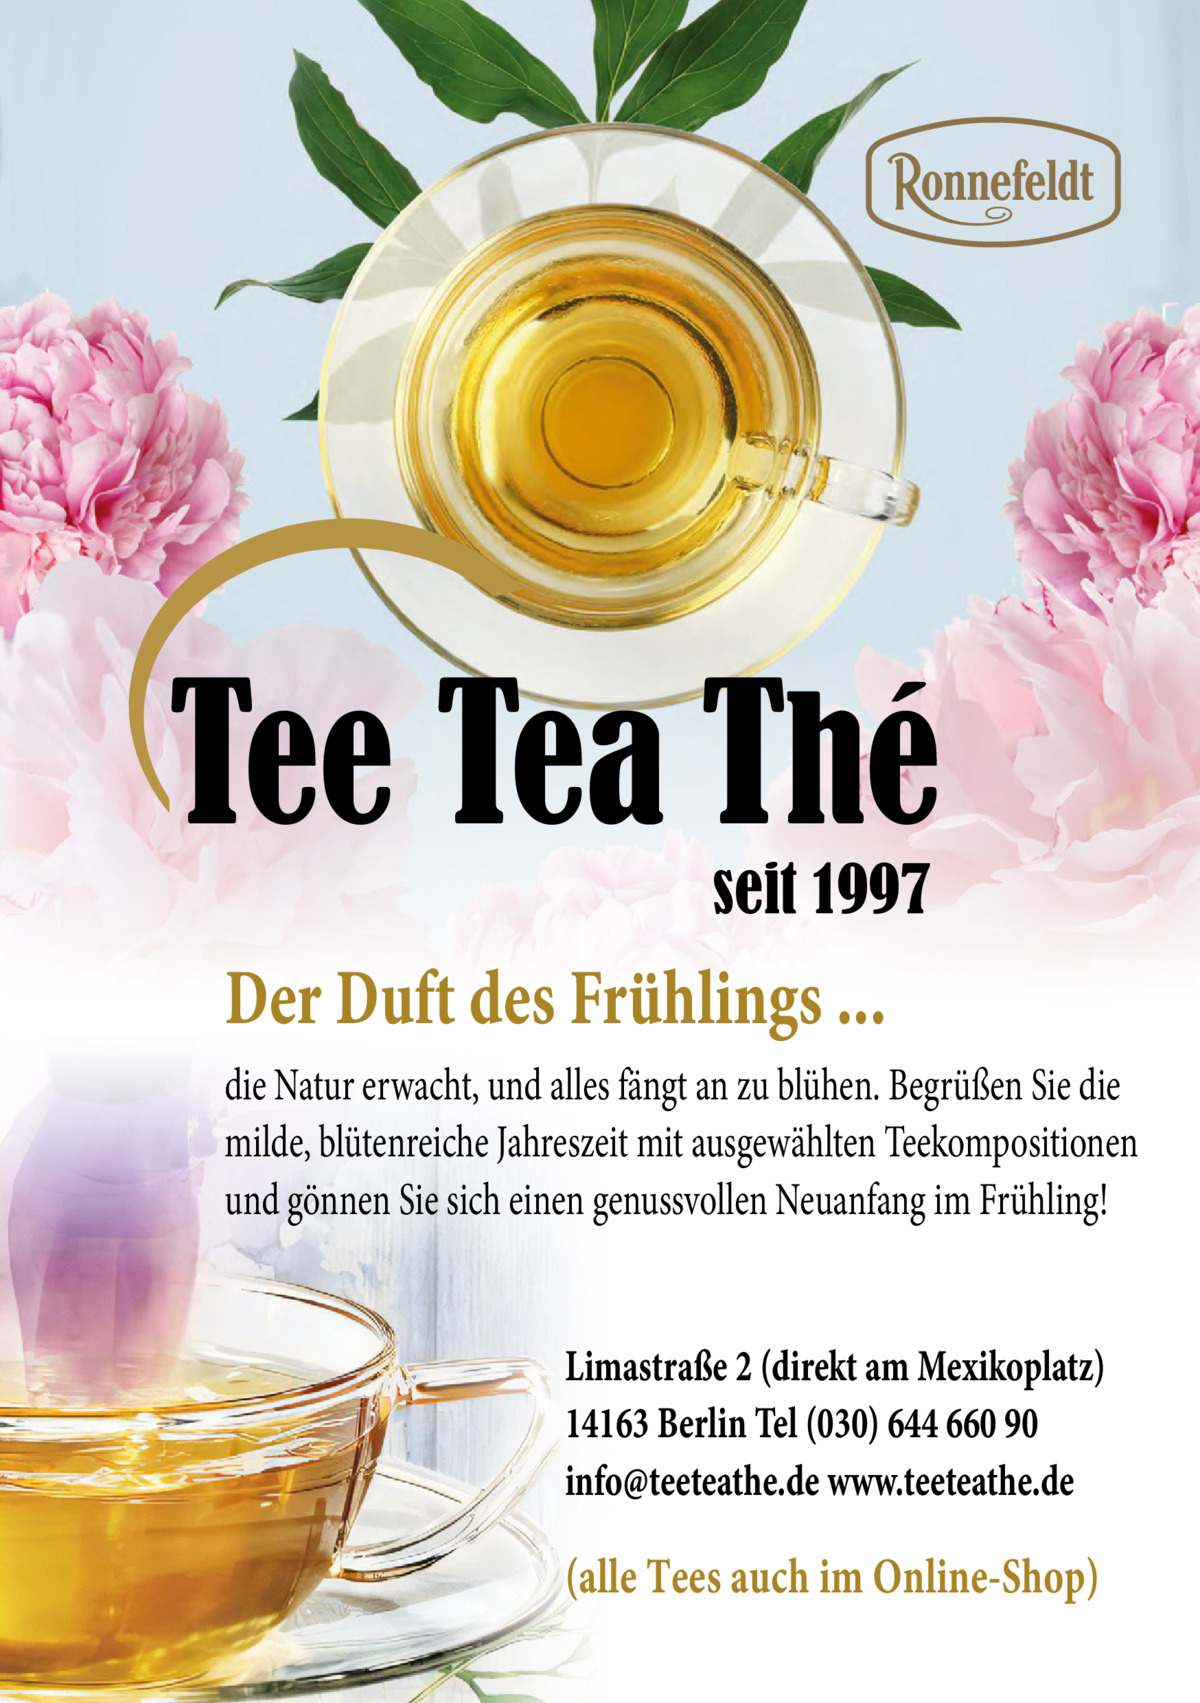 Tee Tea Thé seit 1997  Der Duft des Frühlings ... die Natur erwacht, und alles fängt an zu blühen. Begrüßen Sie die milde, blütenreiche Jahreszeit mit ausgewählten Teekompositionen und gönnen Sie sich einen genussvollen Neuanfang im Frühling! Limastraße 2 (direkt am Mexikoplatz) 14163 Berlin Tel (030) 644 660 90 info@teeteathe.de www.teeteathe.de  (alle Tees auch im Online-Shop)